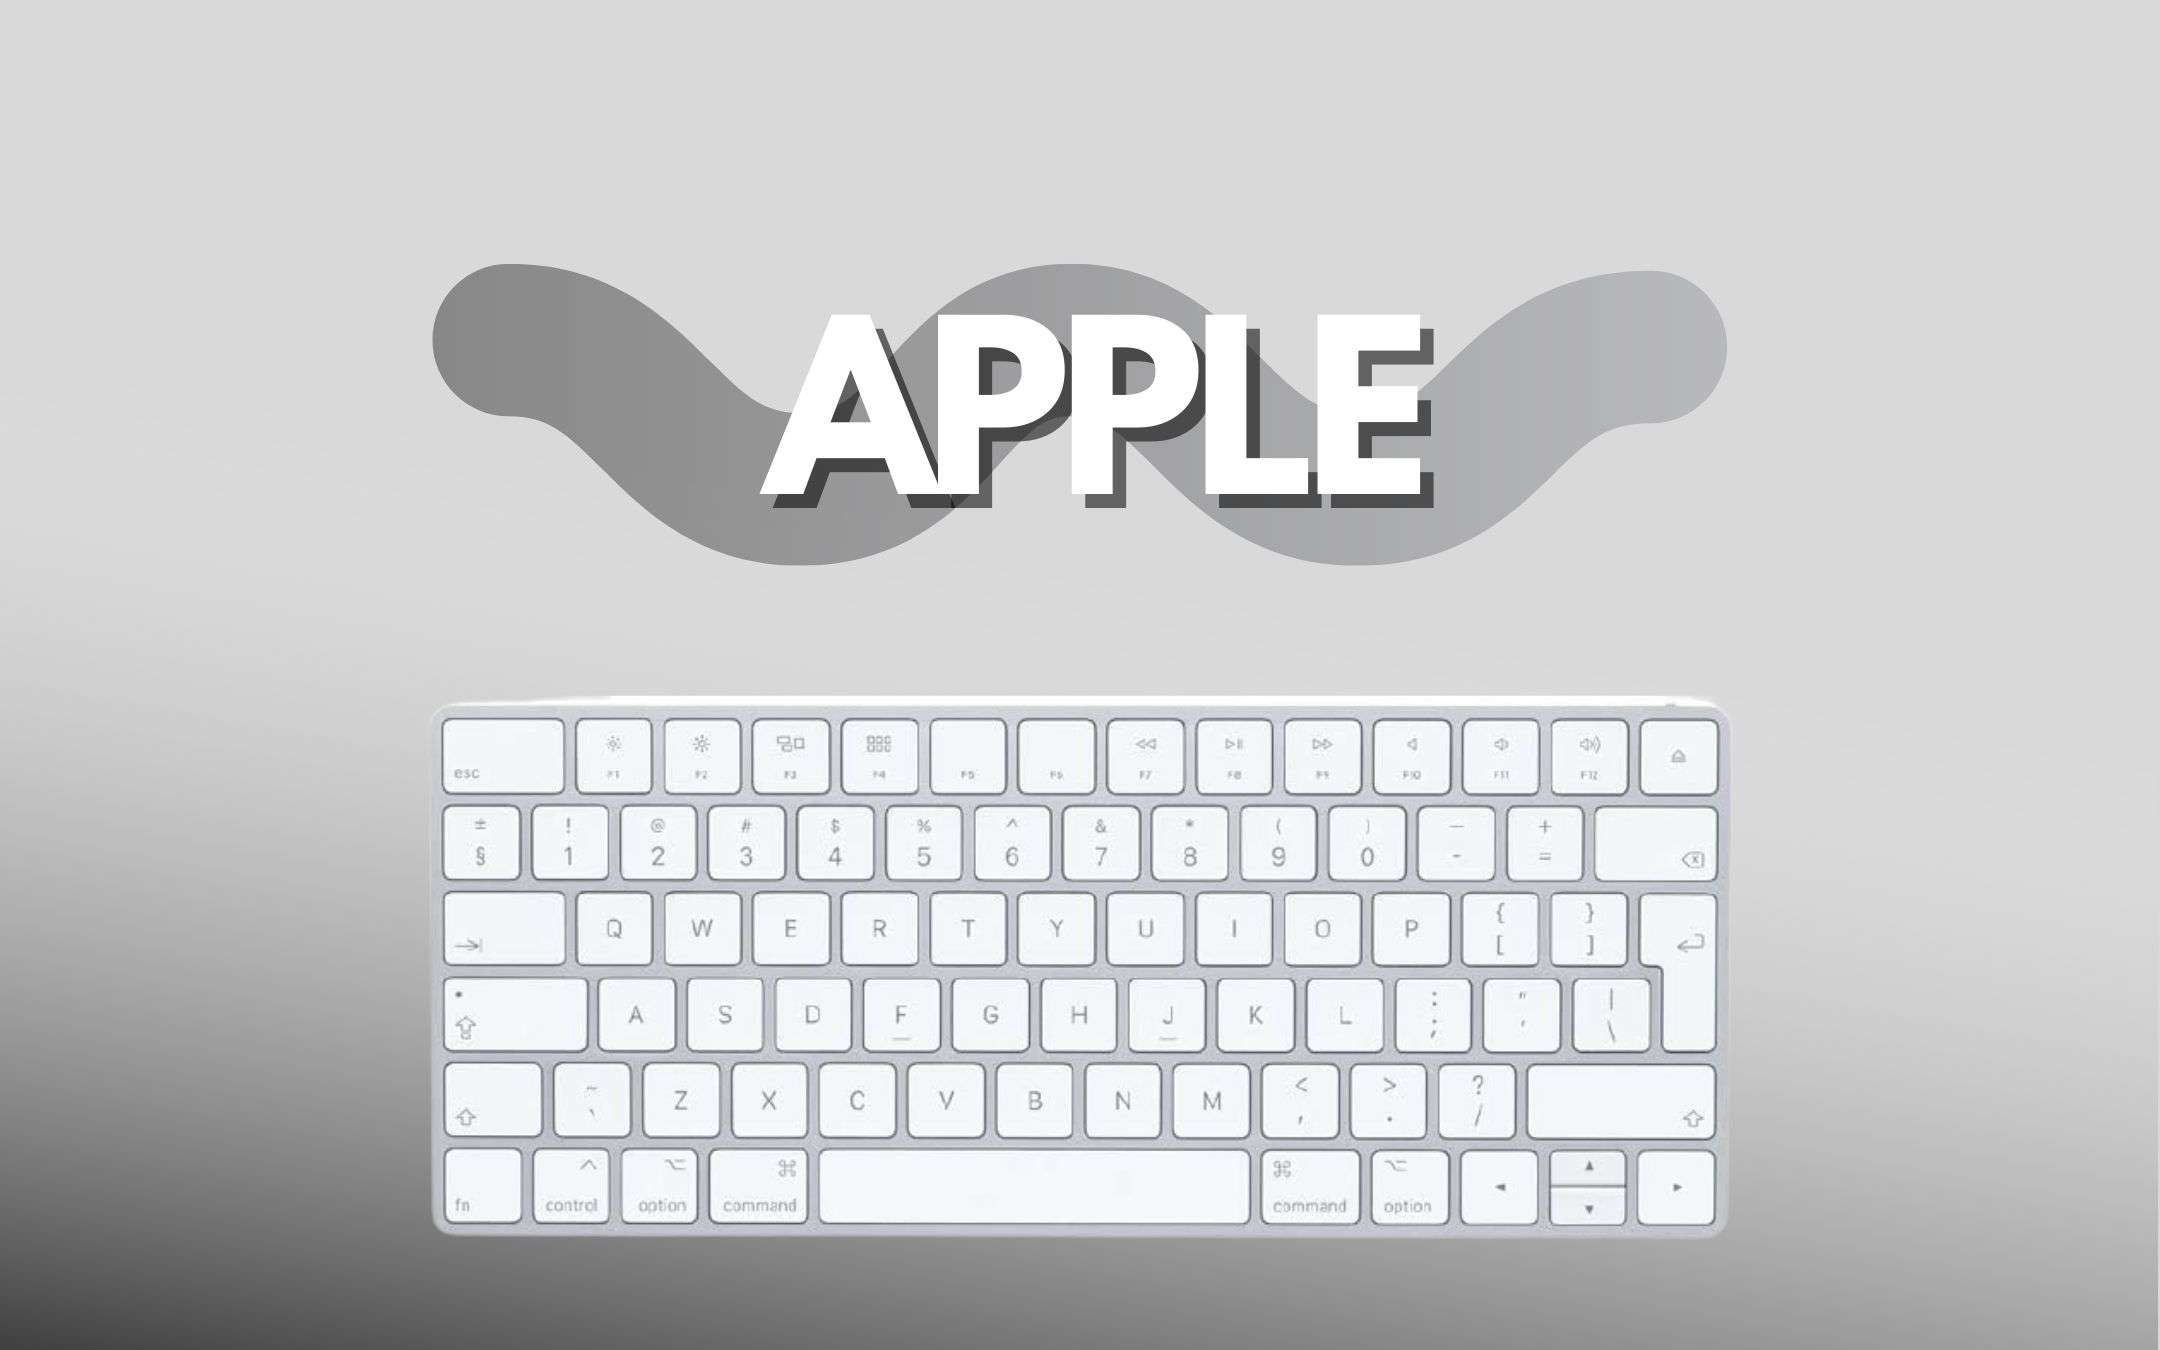 Apple Magic Keyboard è più economica su Amazon